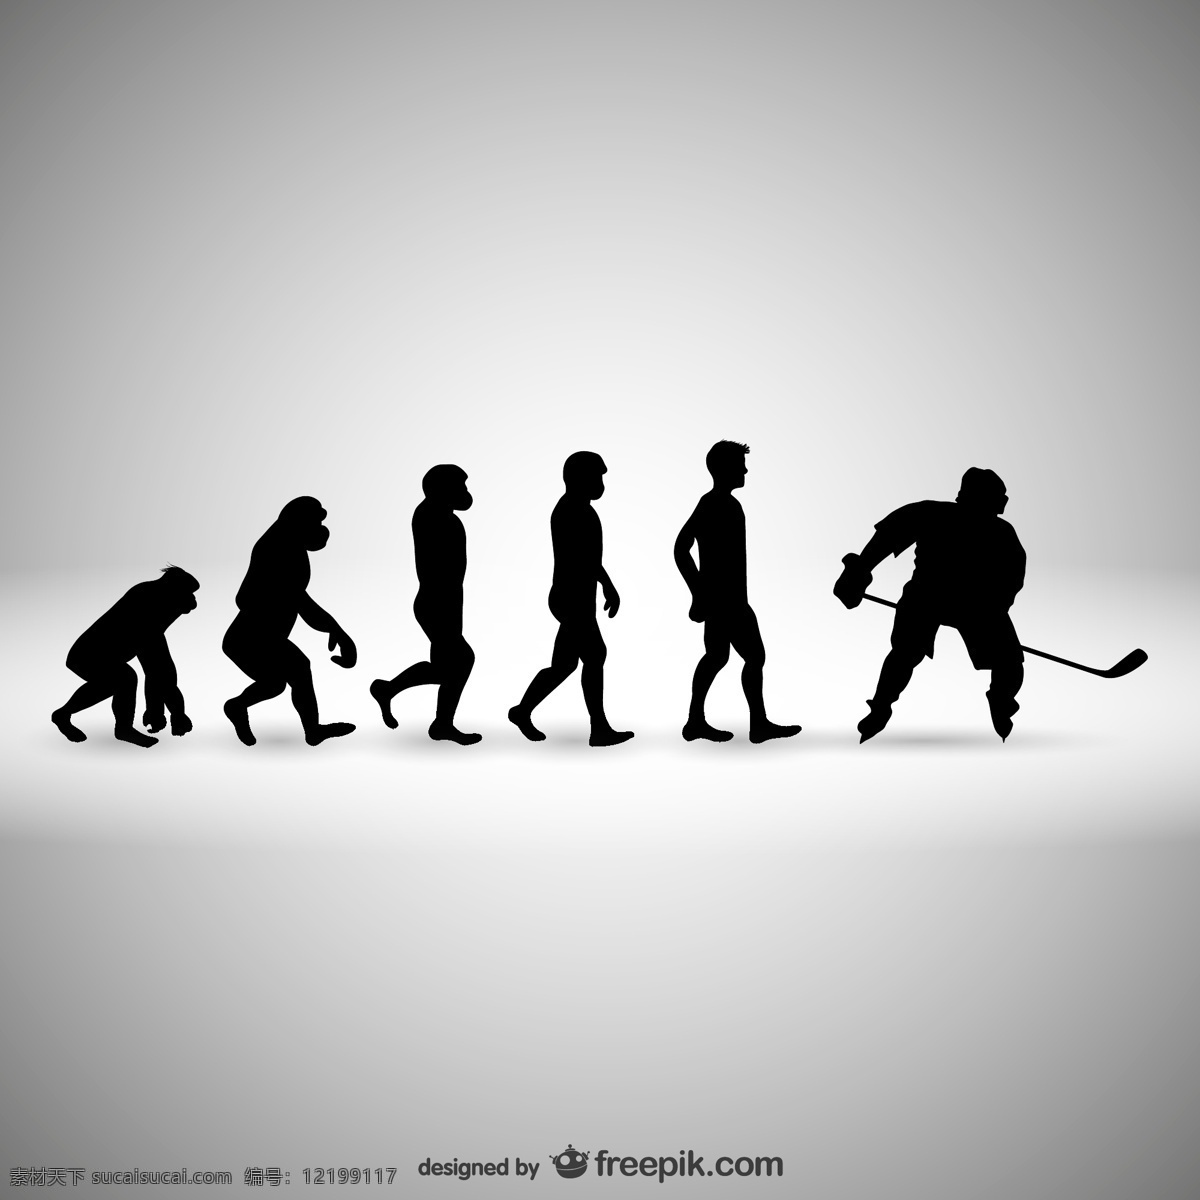 曲棍球 人类 进化 运动 人 模板 冬季 体育 轮廓 游戏 冰 冷冻 玩 有趣 插图 历史 专业 演变 竞争 灰色